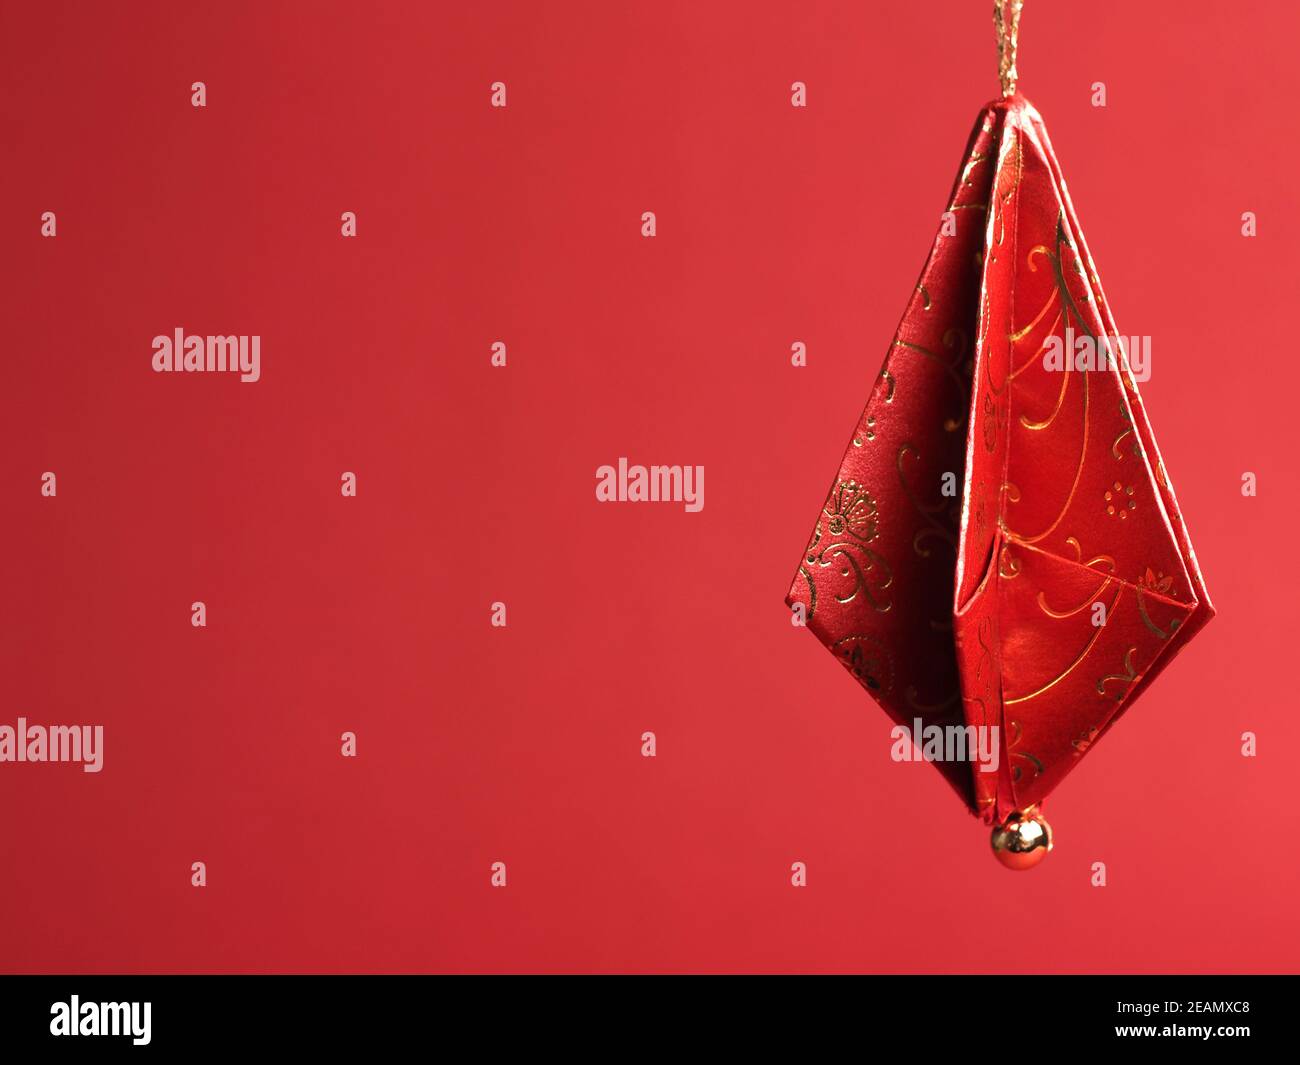 Adornos de árbol de Navidad doblados de hermoso rojo y oro decorativo papel sobre fondo rojo Foto de stock